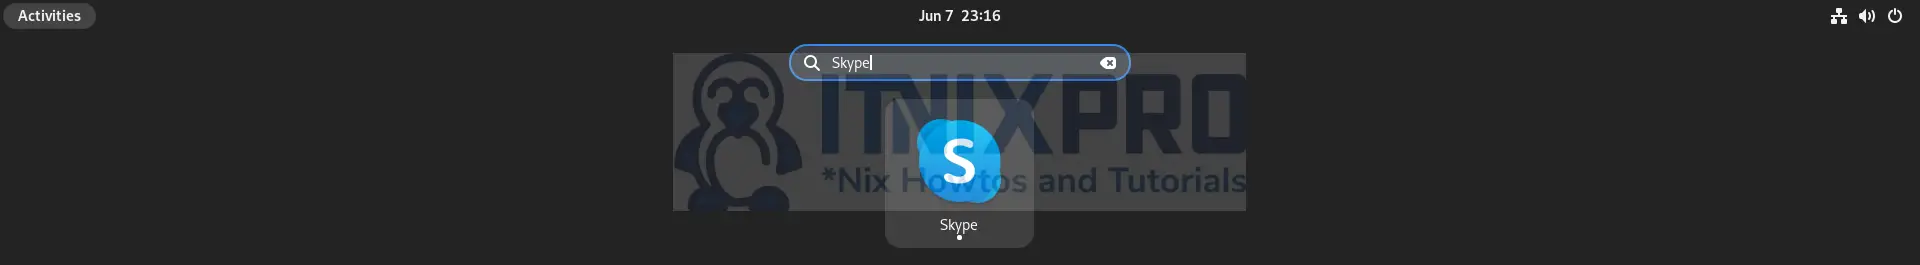 Install Skype on Fedora 36